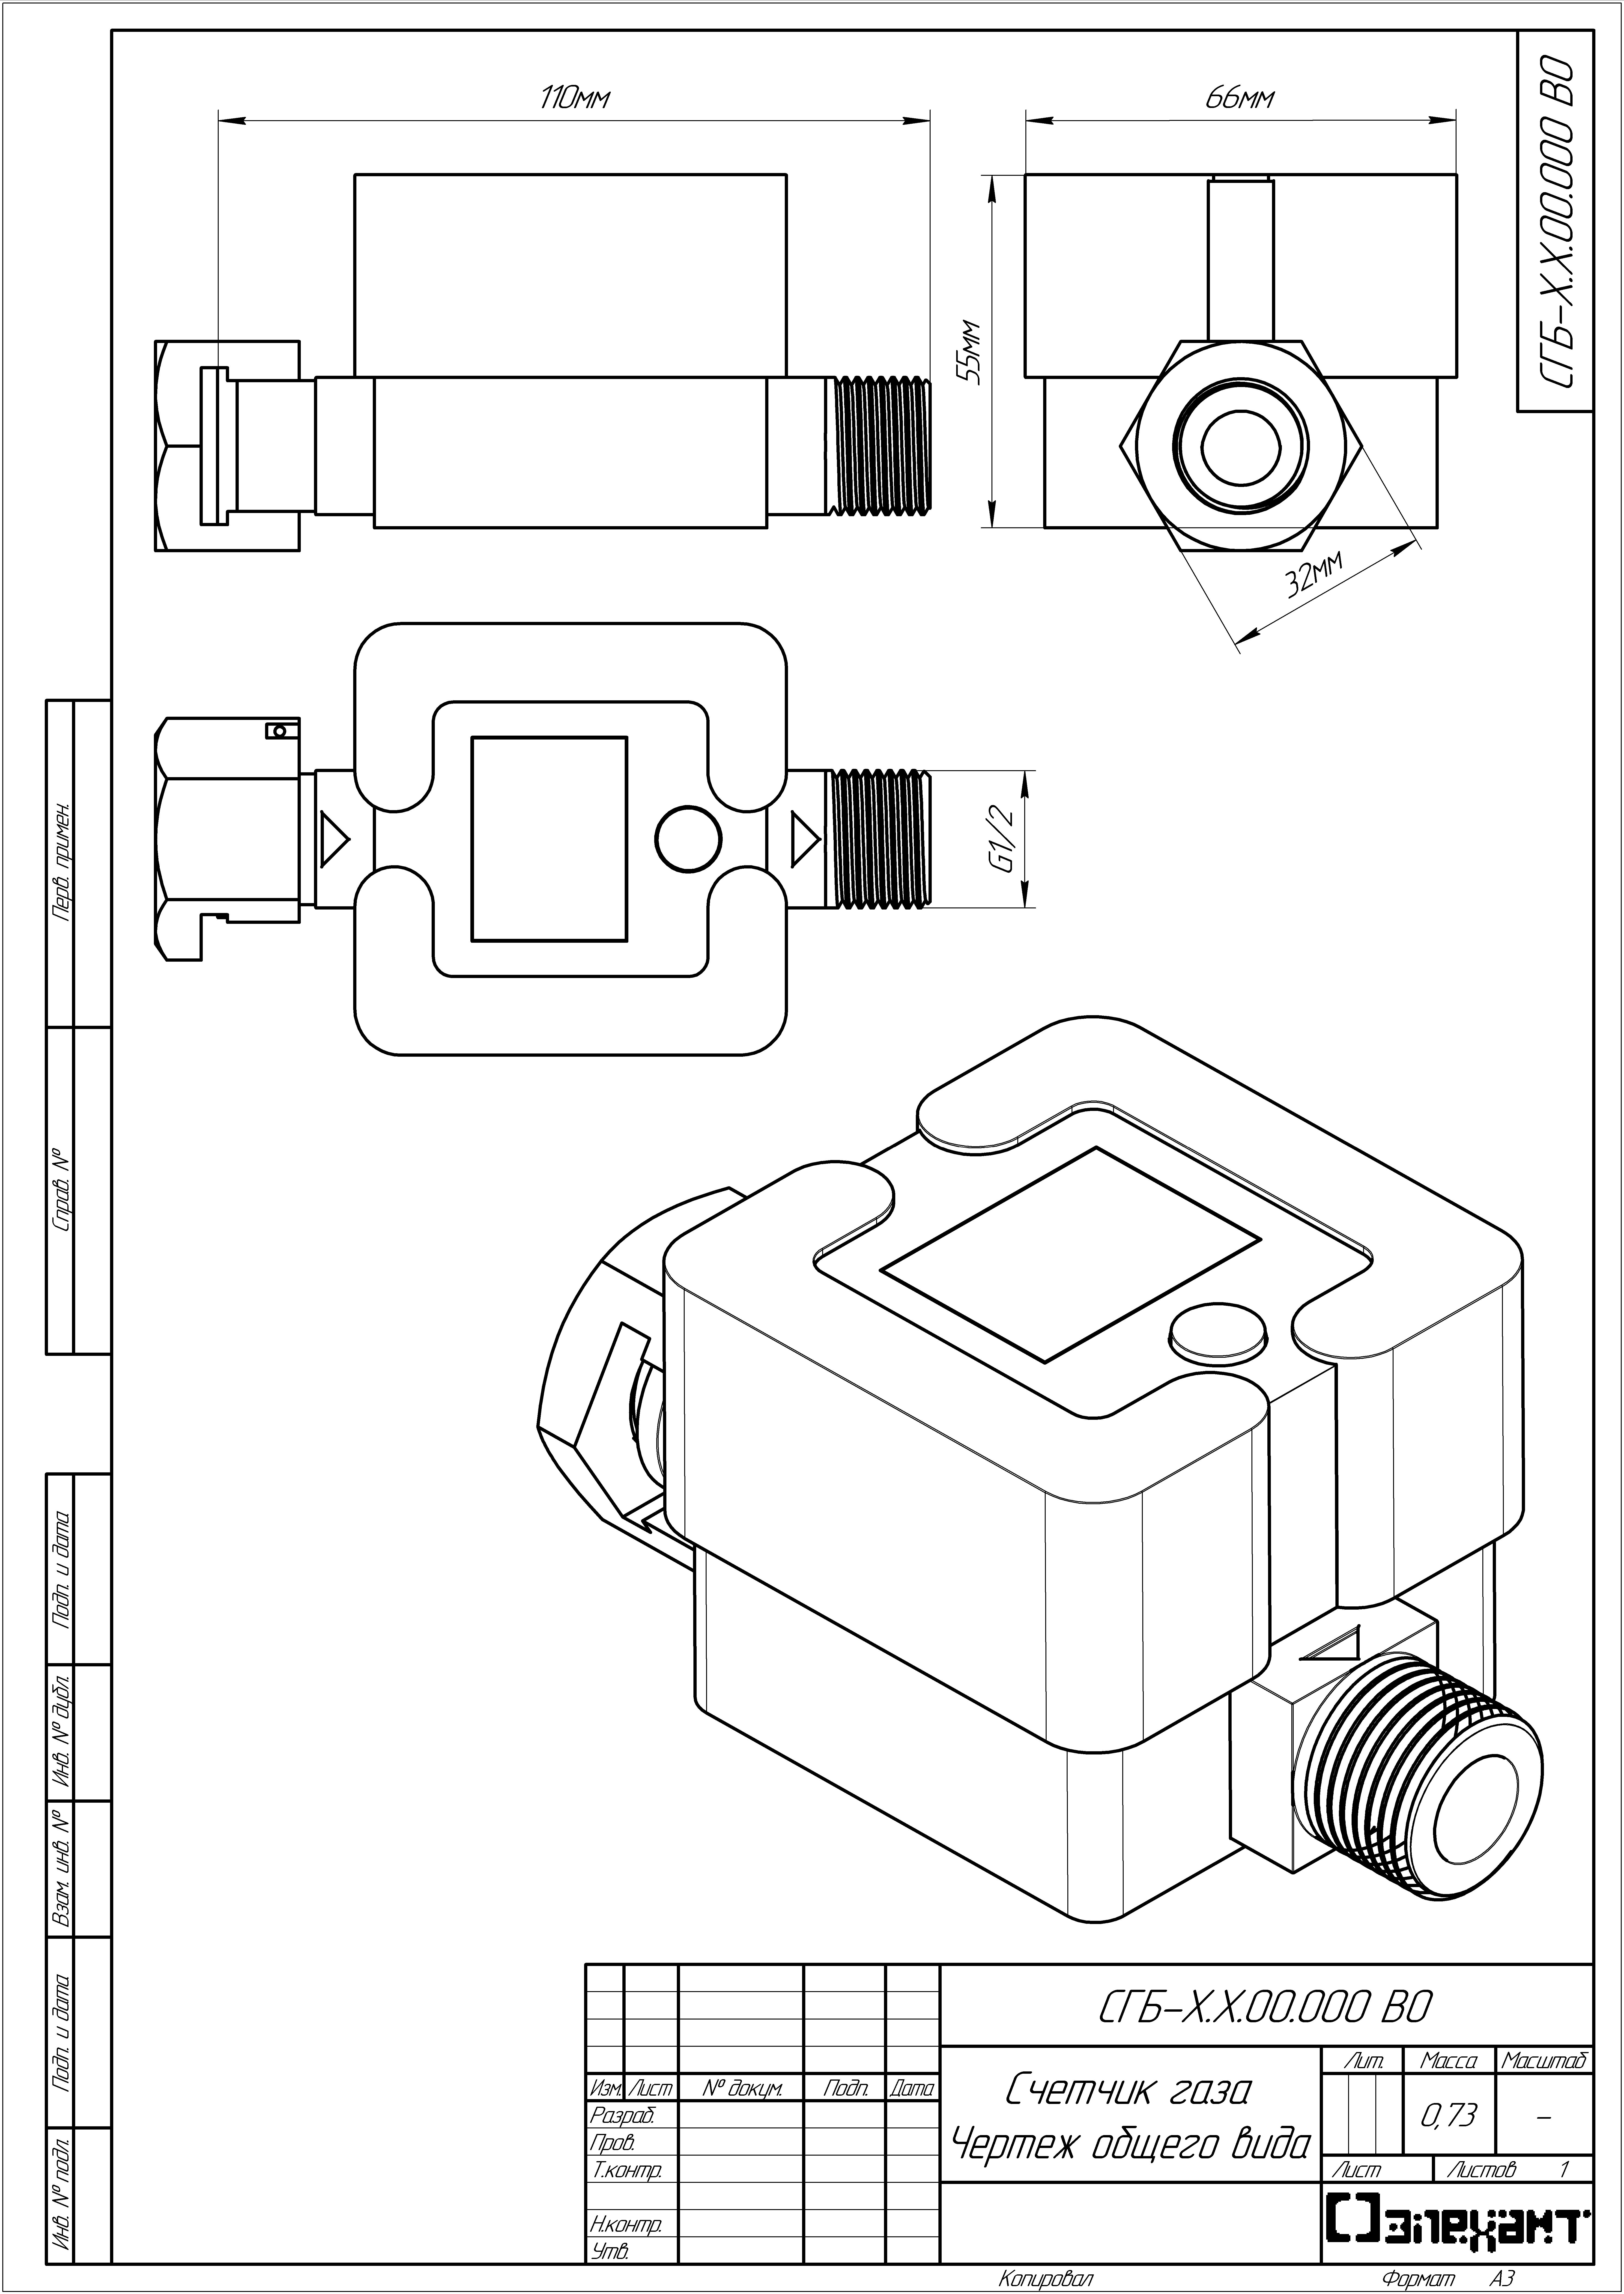 Drawings of the gas meter